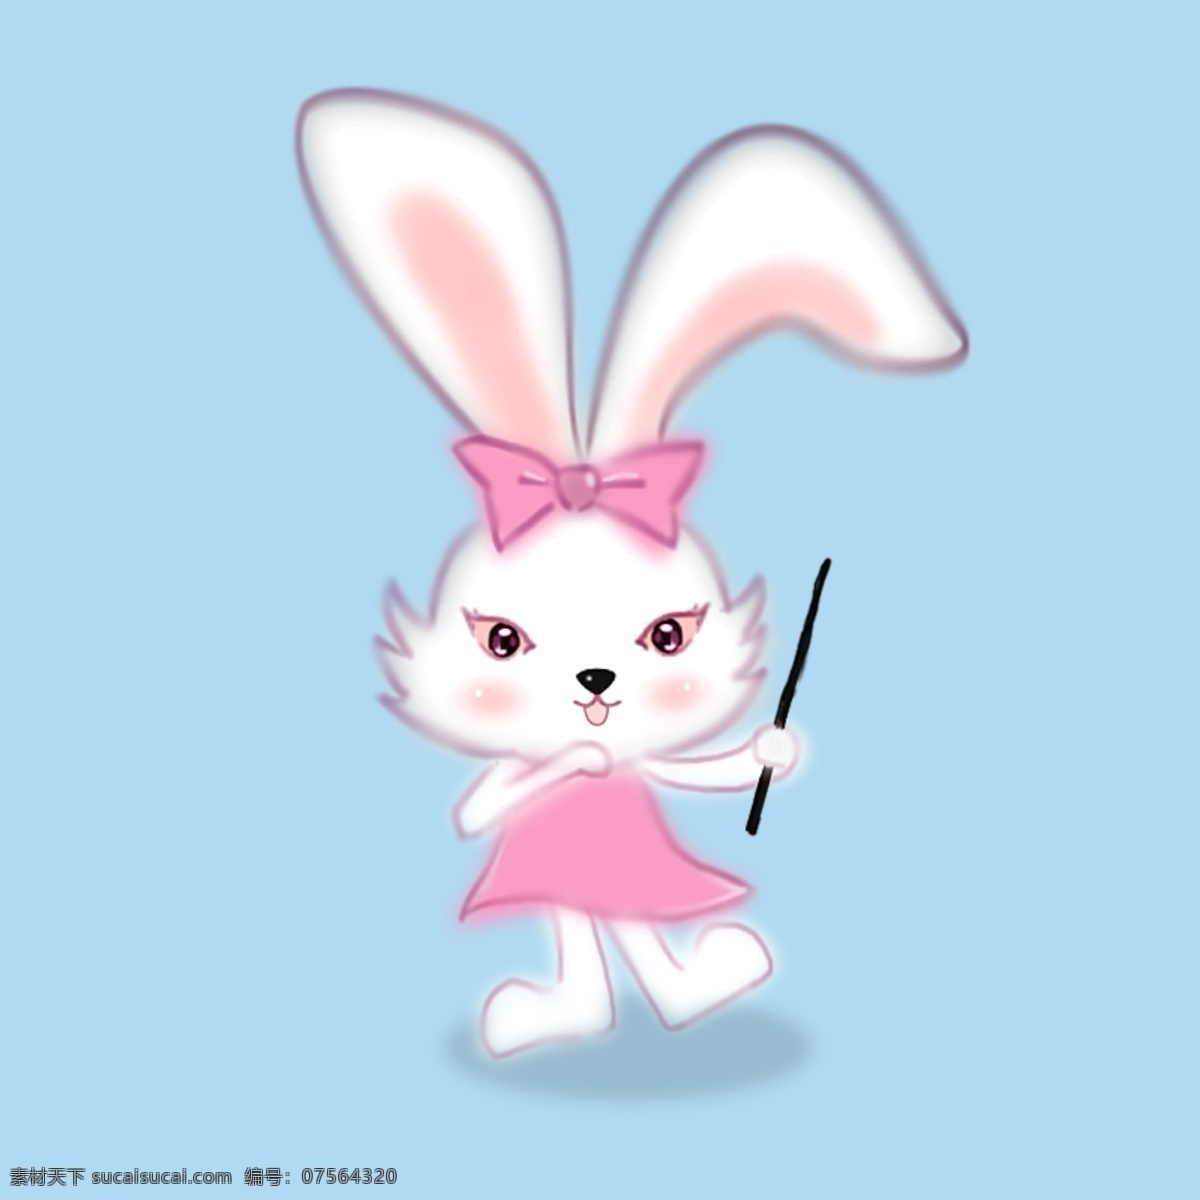 兔子 吉祥物 插画 兔子素材 小兔子 中秋兔子插画 可爱 中秋 卡通插画素材 小清新 萌兔子